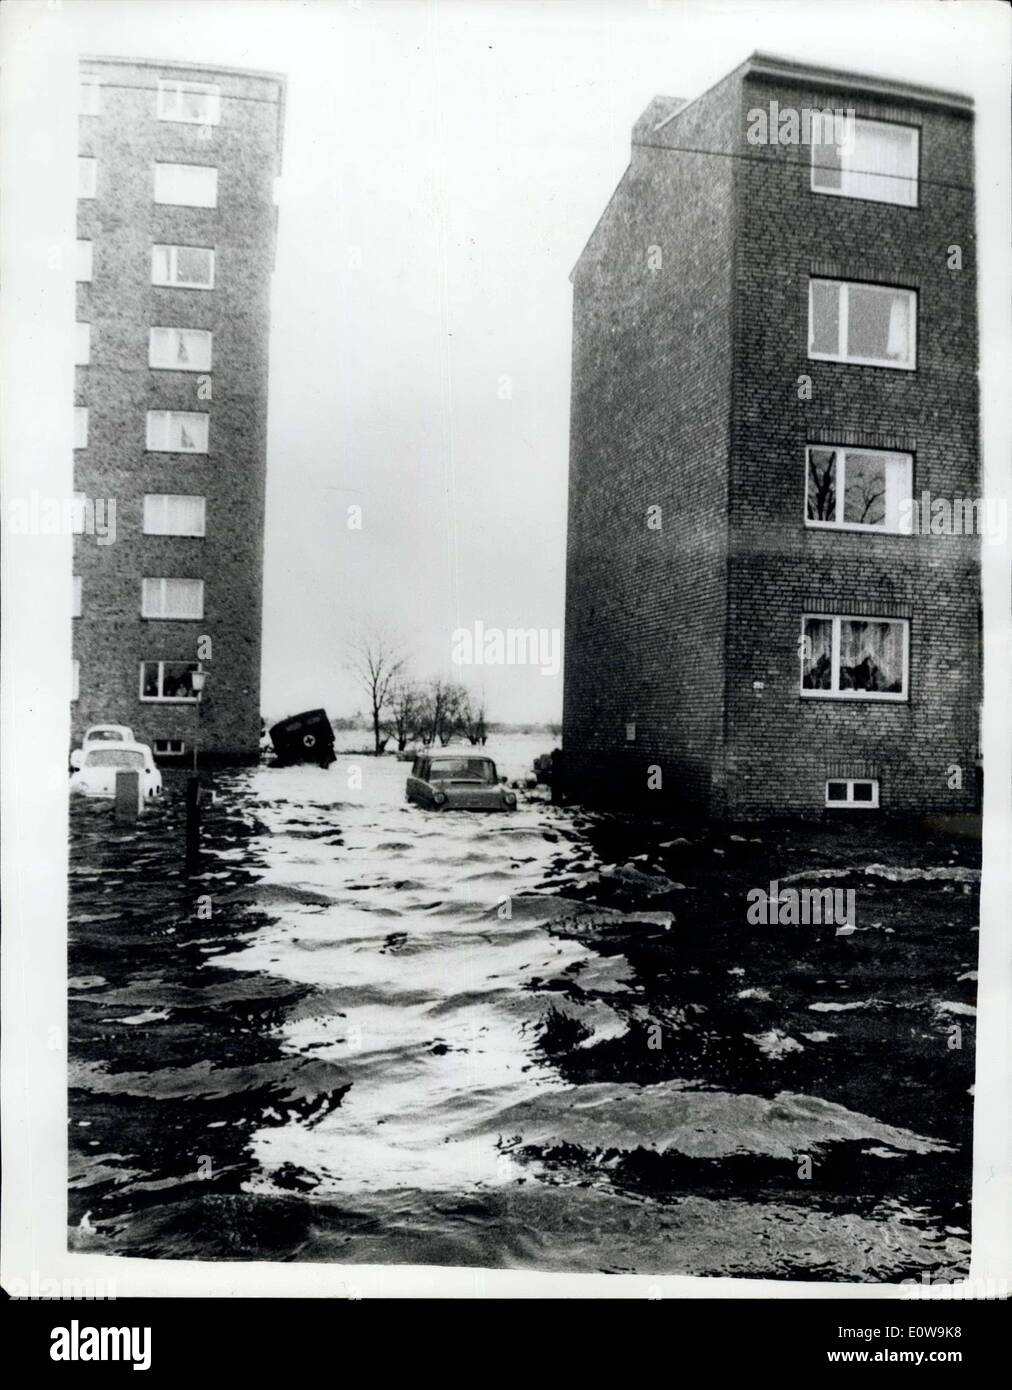 10 févr. 19, 1962 - Les troupes britanniques de l'aide dans les opérations de sauvetage dans les pires inondations de l'histoire de l'Allemagne ; Six cents soldats britanniques sont parmi les milliers d'aides avec des bateaux d'assaut remorqueurs etc. sauver des milliers marooned par les pires inondations en allemand mémoire vivante. Ils se sont précipités dans l'action lase le samedi après la marée haute sur l'Elbe, Eatuary entassés par vents de force ouragan de la mer du Nord ont bondi dans Hambourg. Deux cent quarante six personnes sont inscrites comme morts ou manquants Banque D'Images